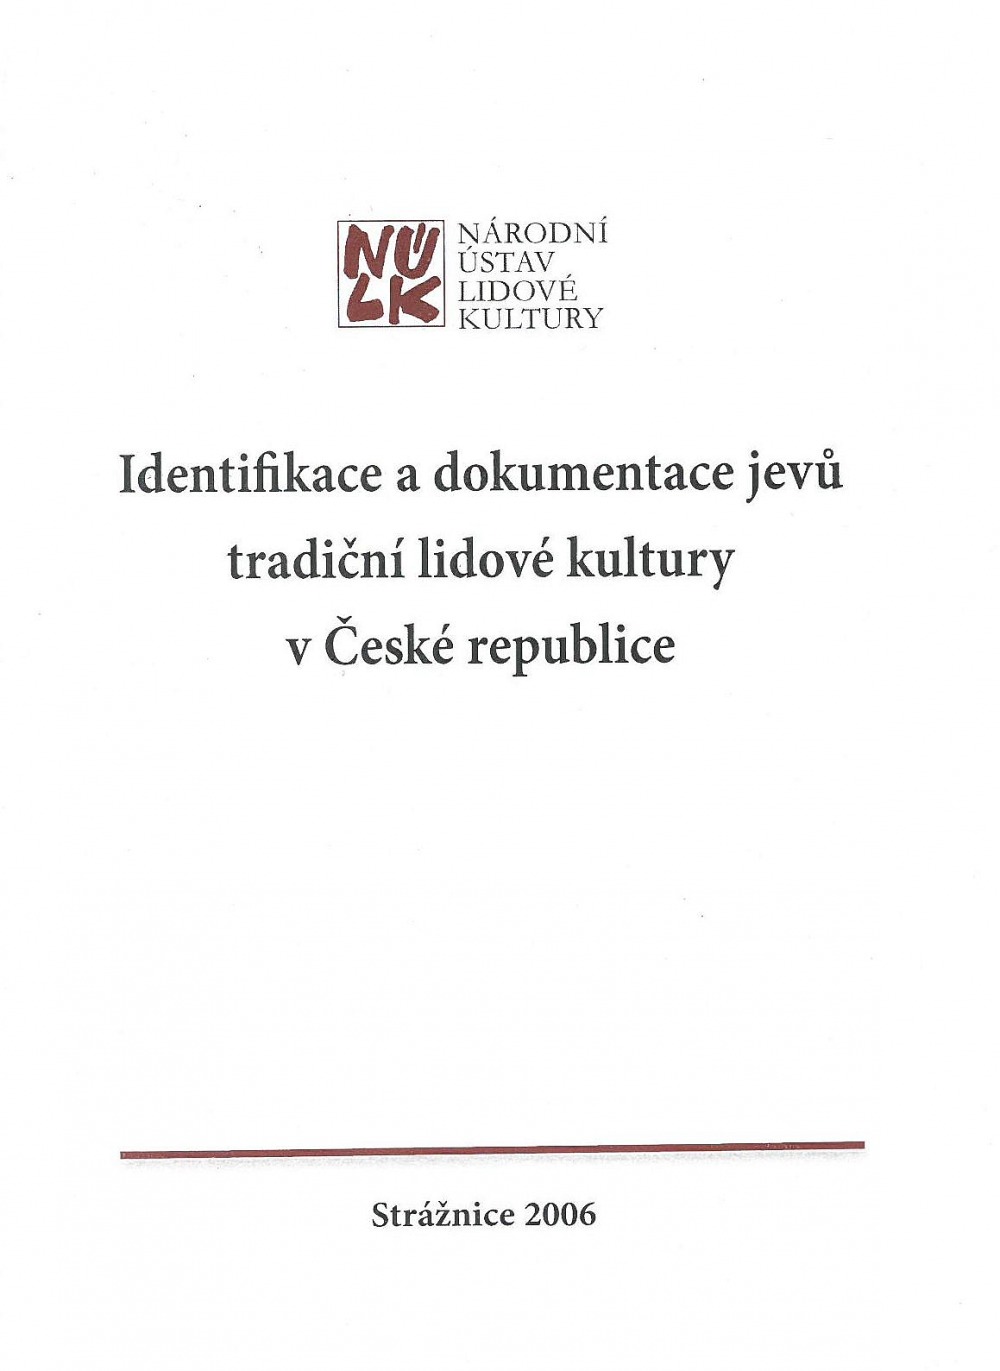 Identifikace a dokumentace jevů tradiční lidové kultury v České republice